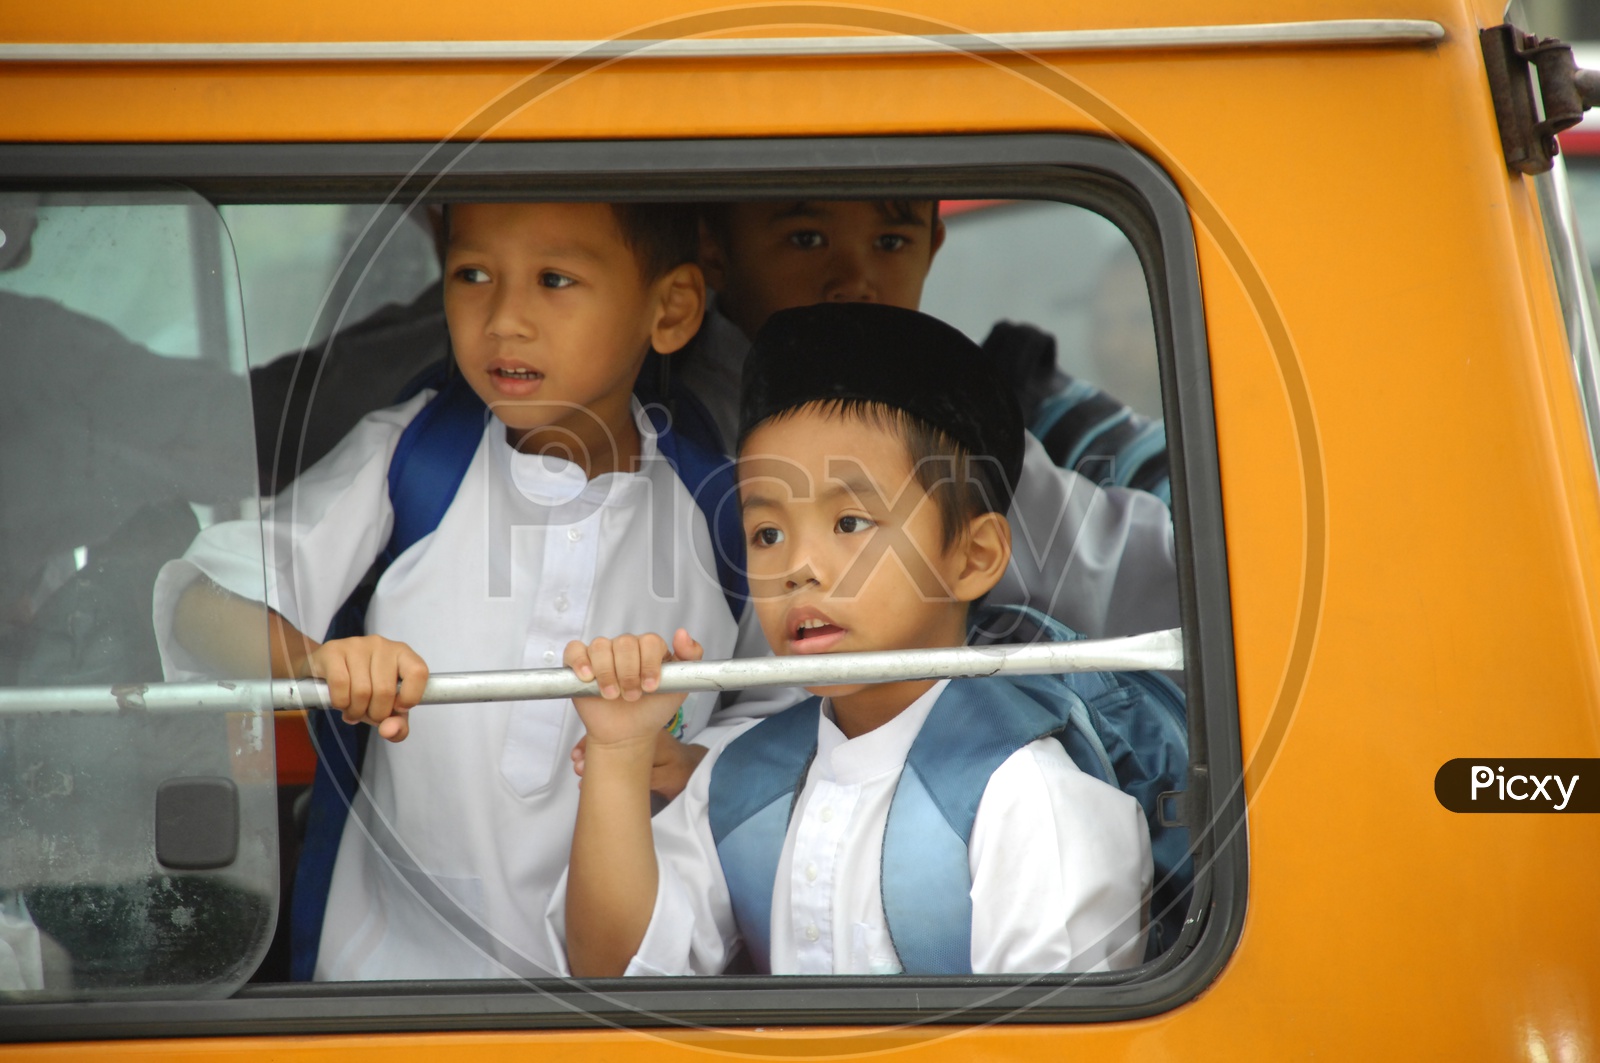 School Children From School Bus Window